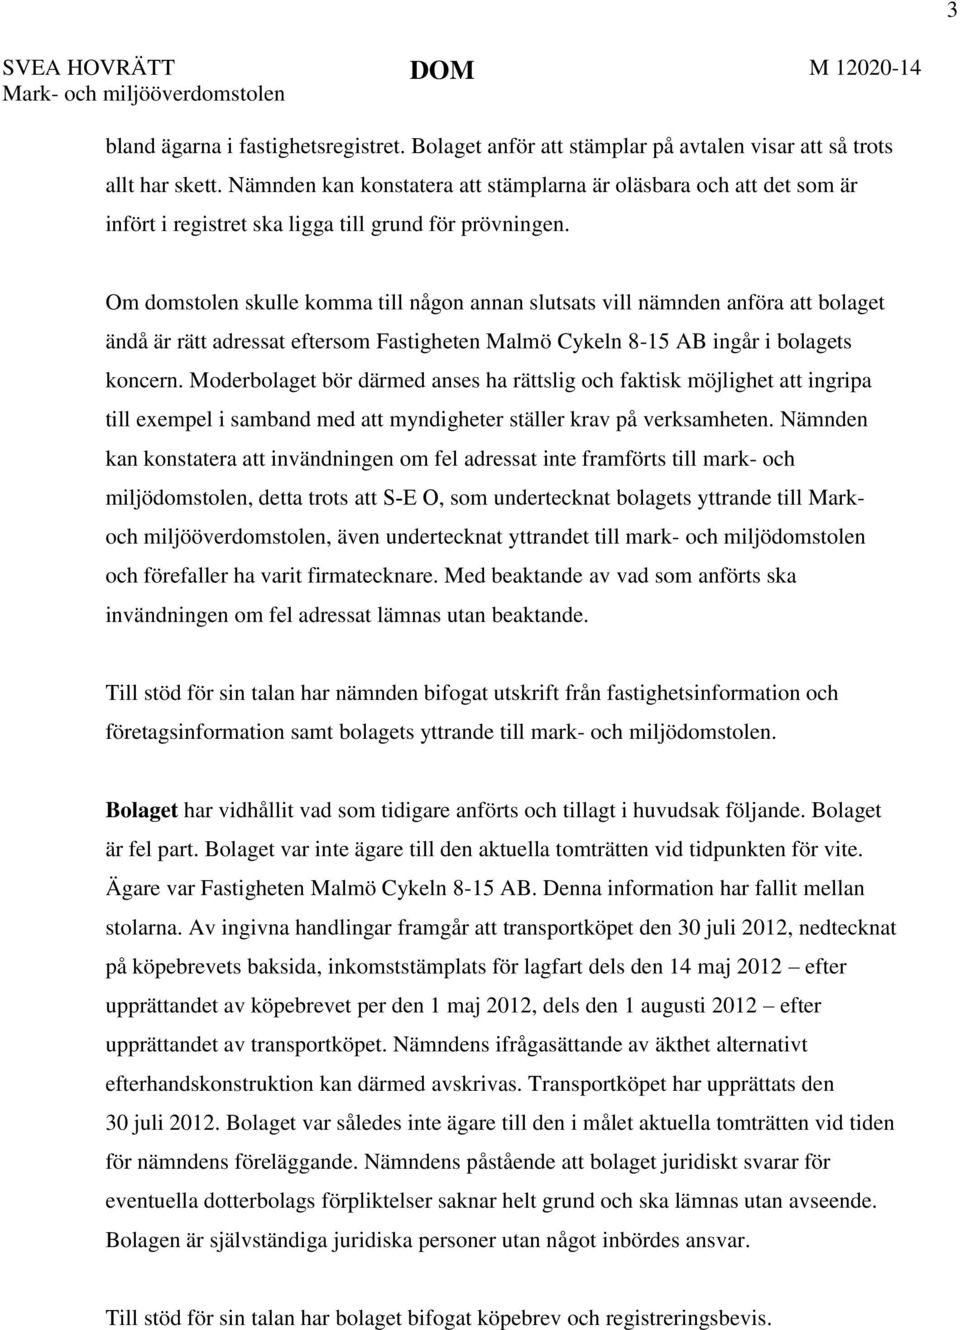 Om domstolen skulle komma till någon annan slutsats vill nämnden anföra att bolaget ändå är rätt adressat eftersom Fastigheten Malmö Cykeln 8-15 AB ingår i bolagets koncern.